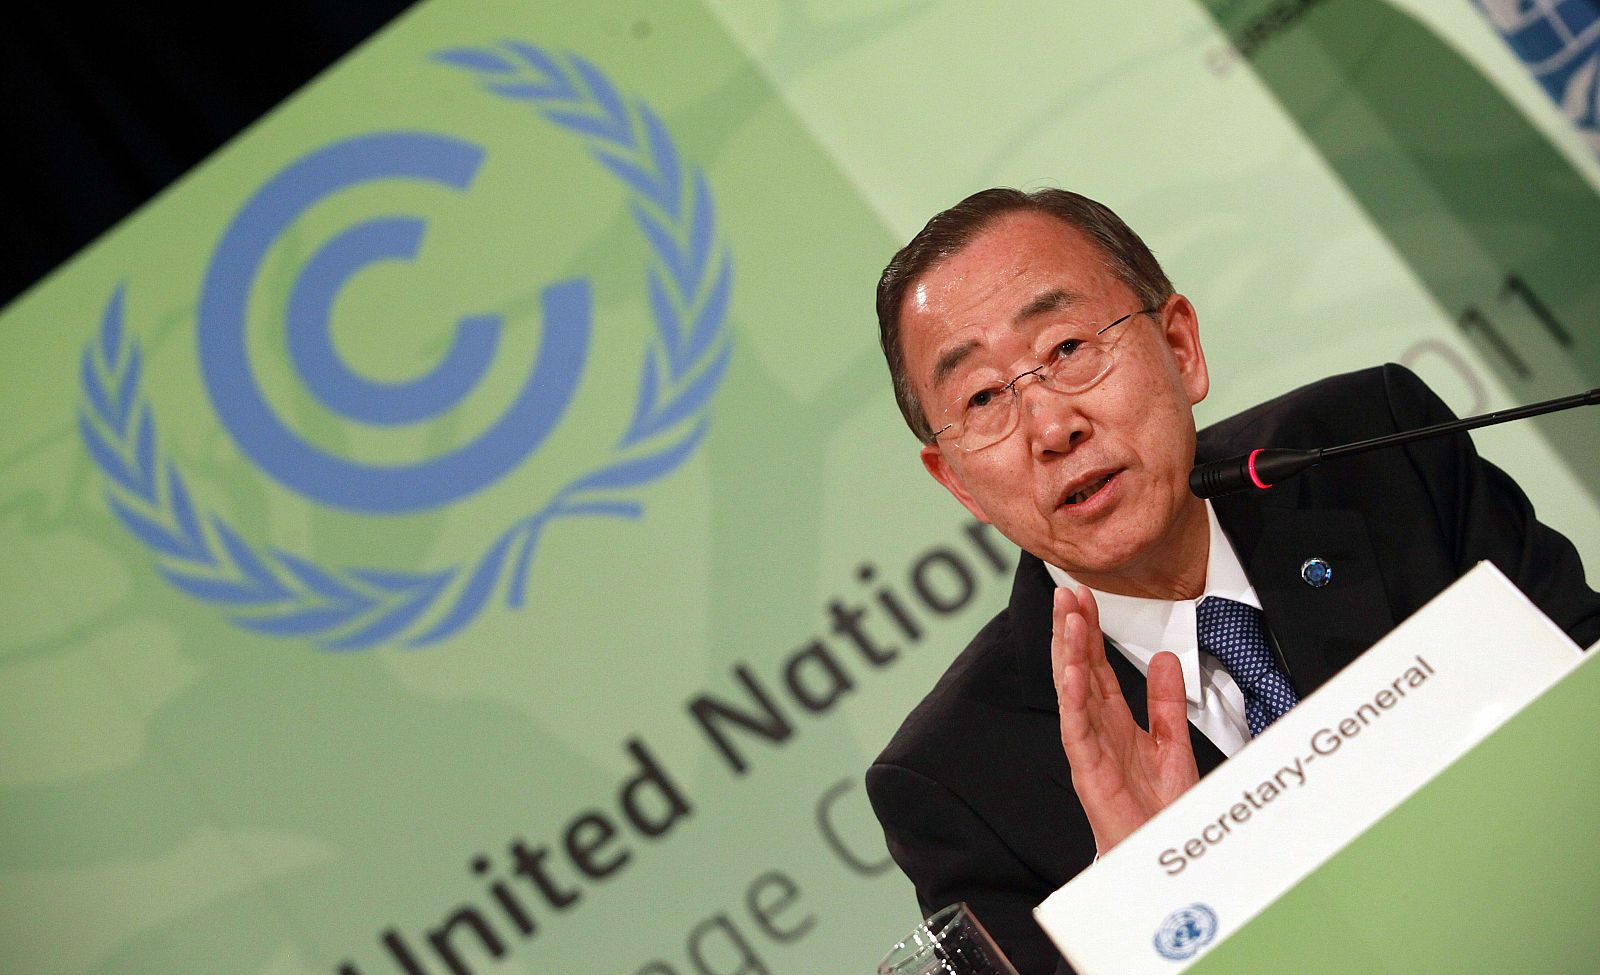 El secretario general de la ONU, Ban Ki-moon en la conferencia de Durban sobre cambio climático.